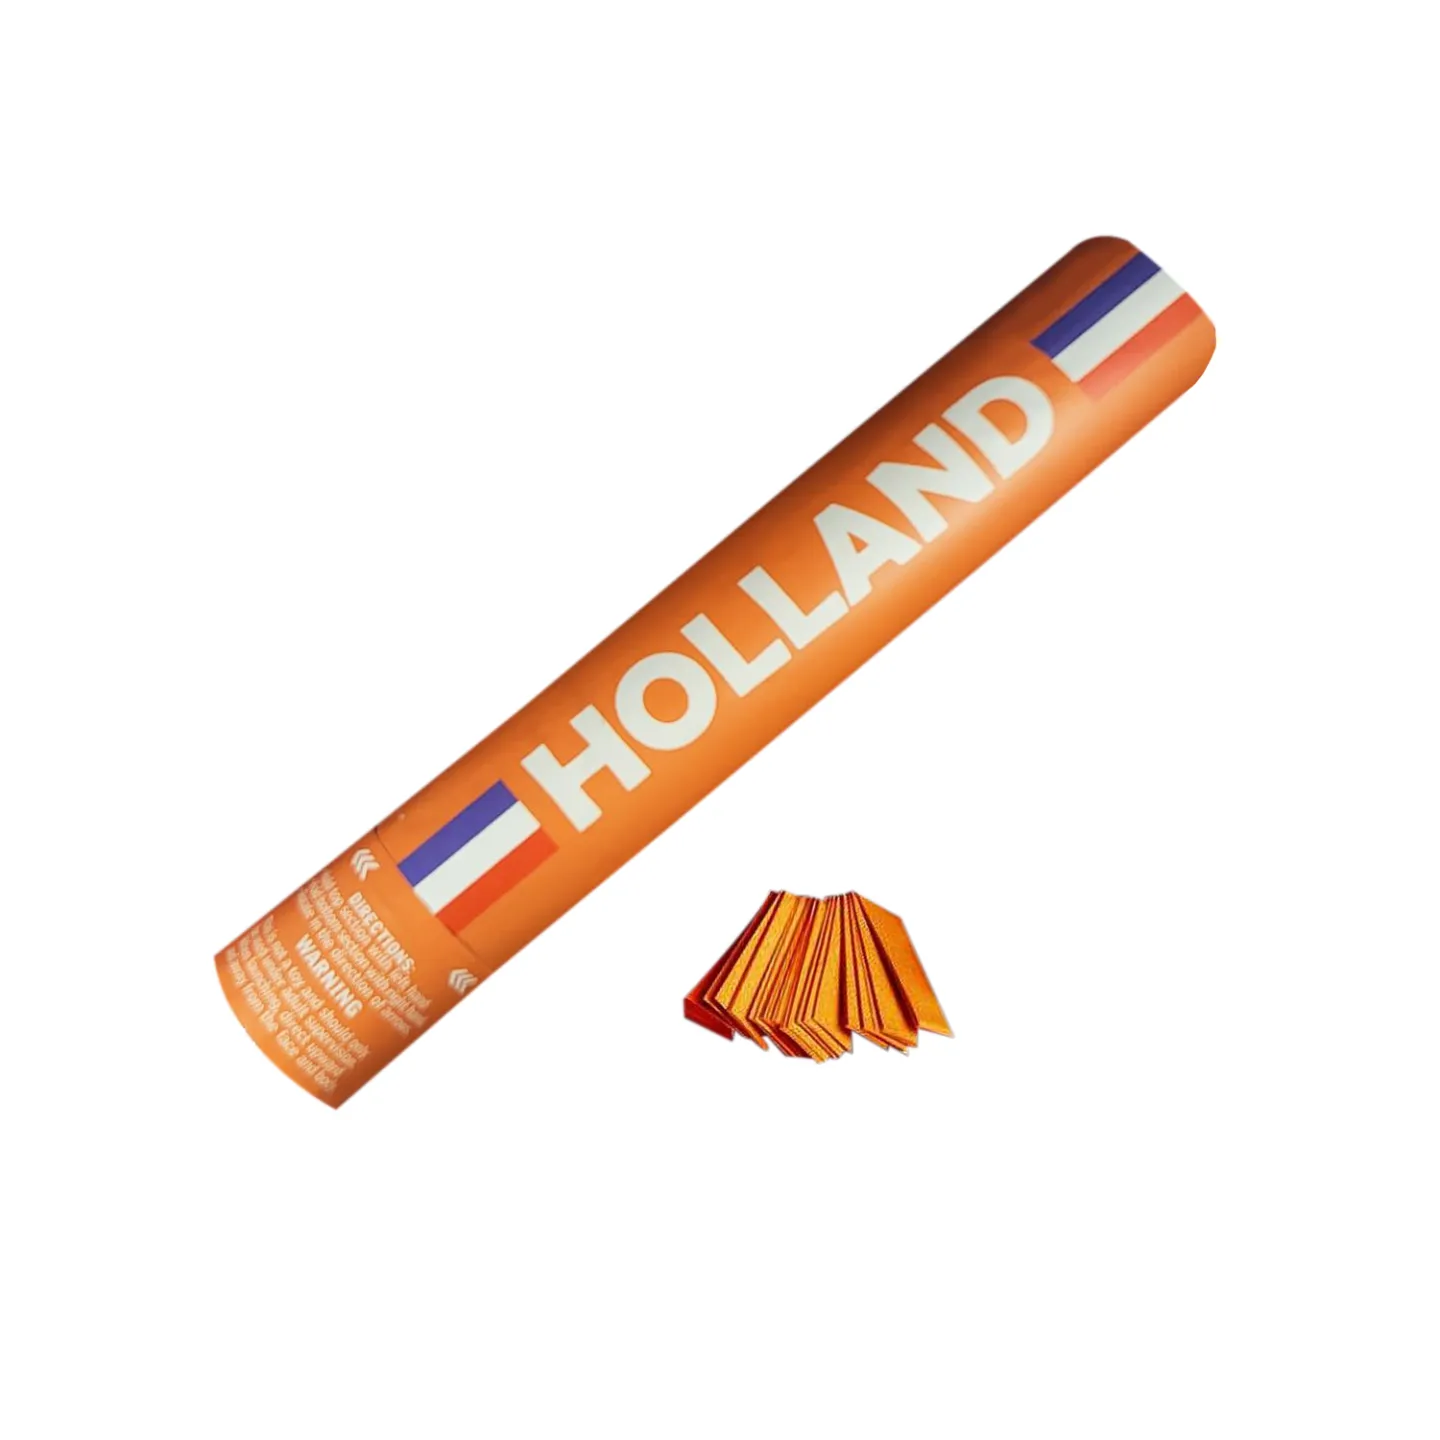 Budget confetti kanon Holland 30cm.